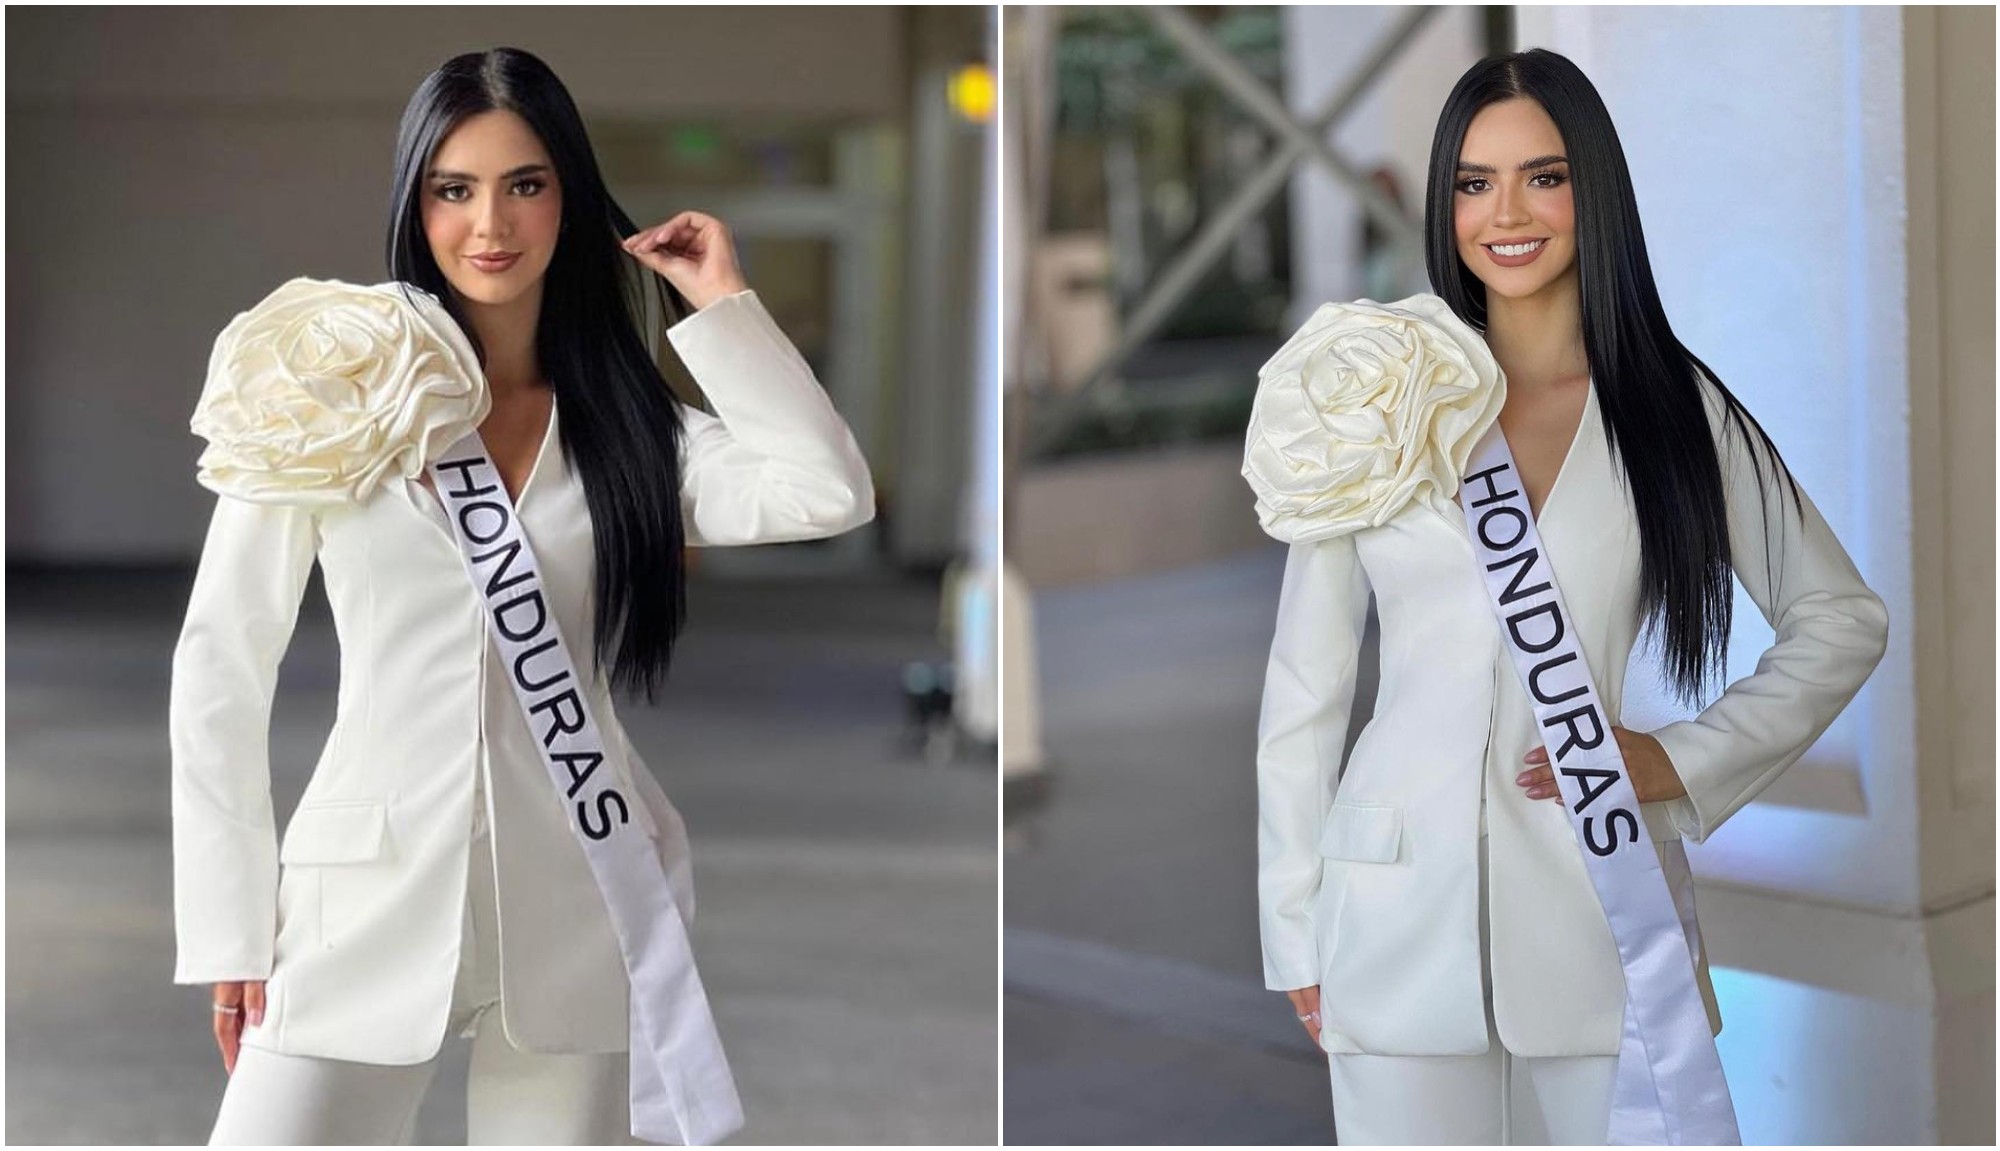 Zu Clemente superó con éxito la entrevista con el jurado de Miss Universo